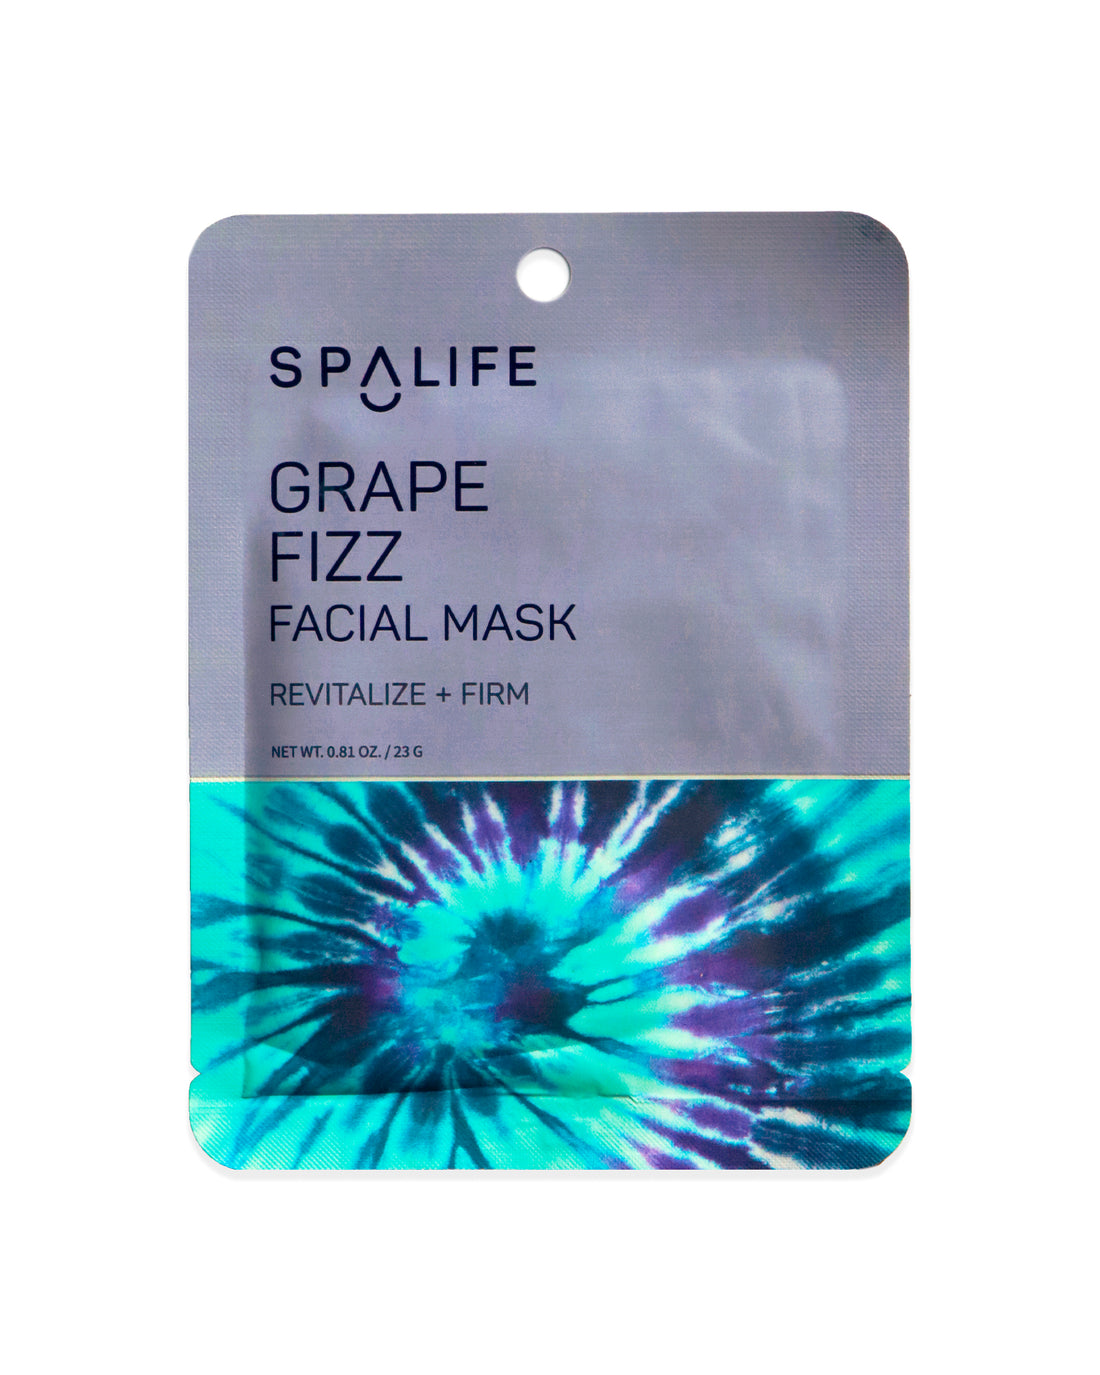 Grape_fizz_facial_mask_packet-494